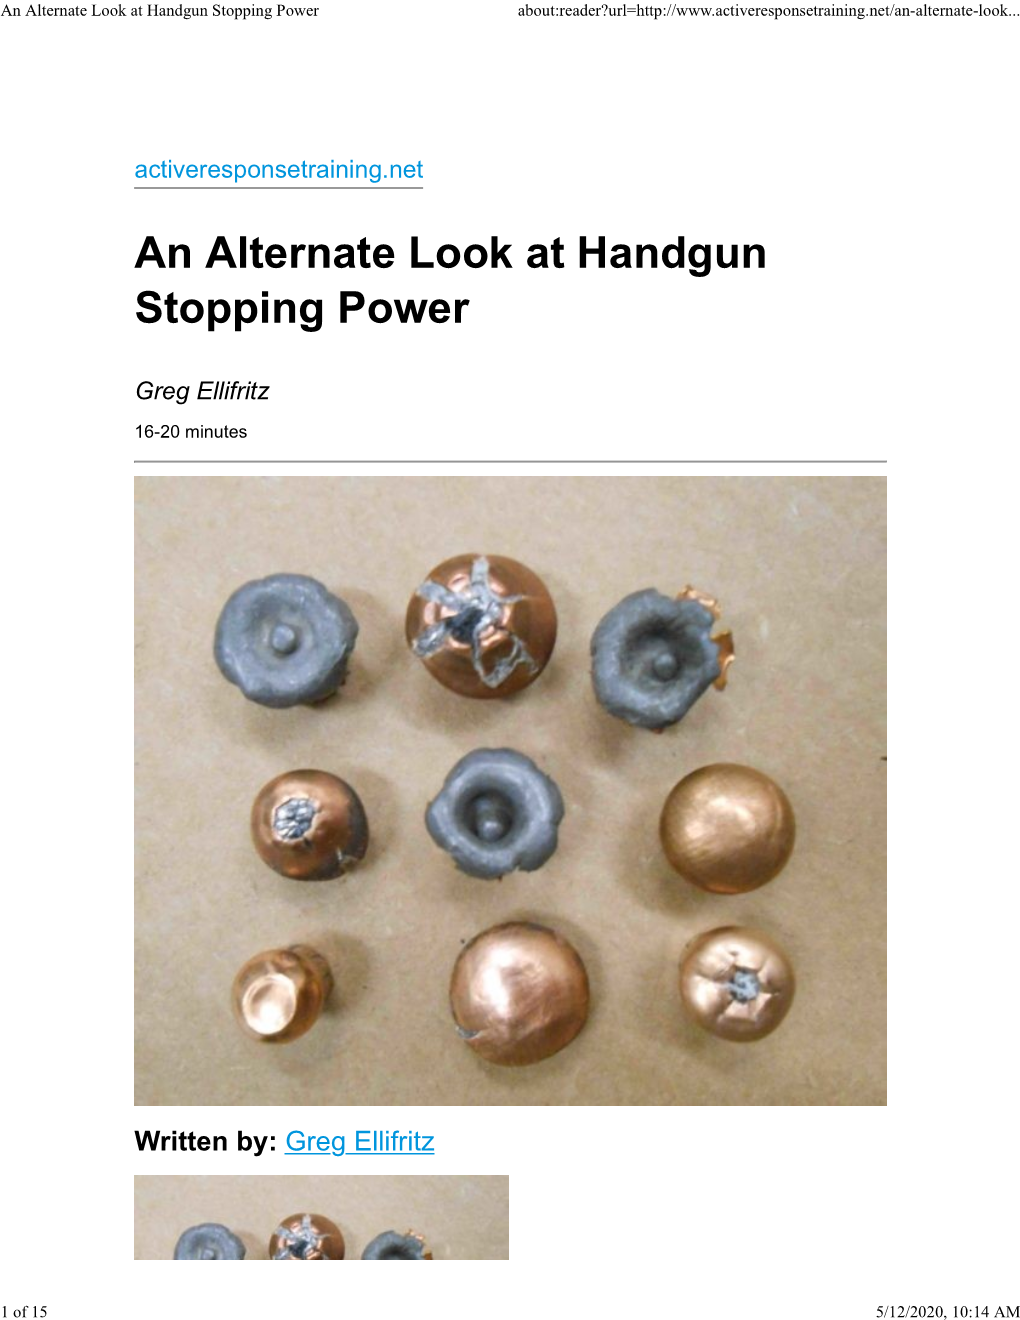 An Alternate Look at Handgun Stopping Power About:Reader?Url=